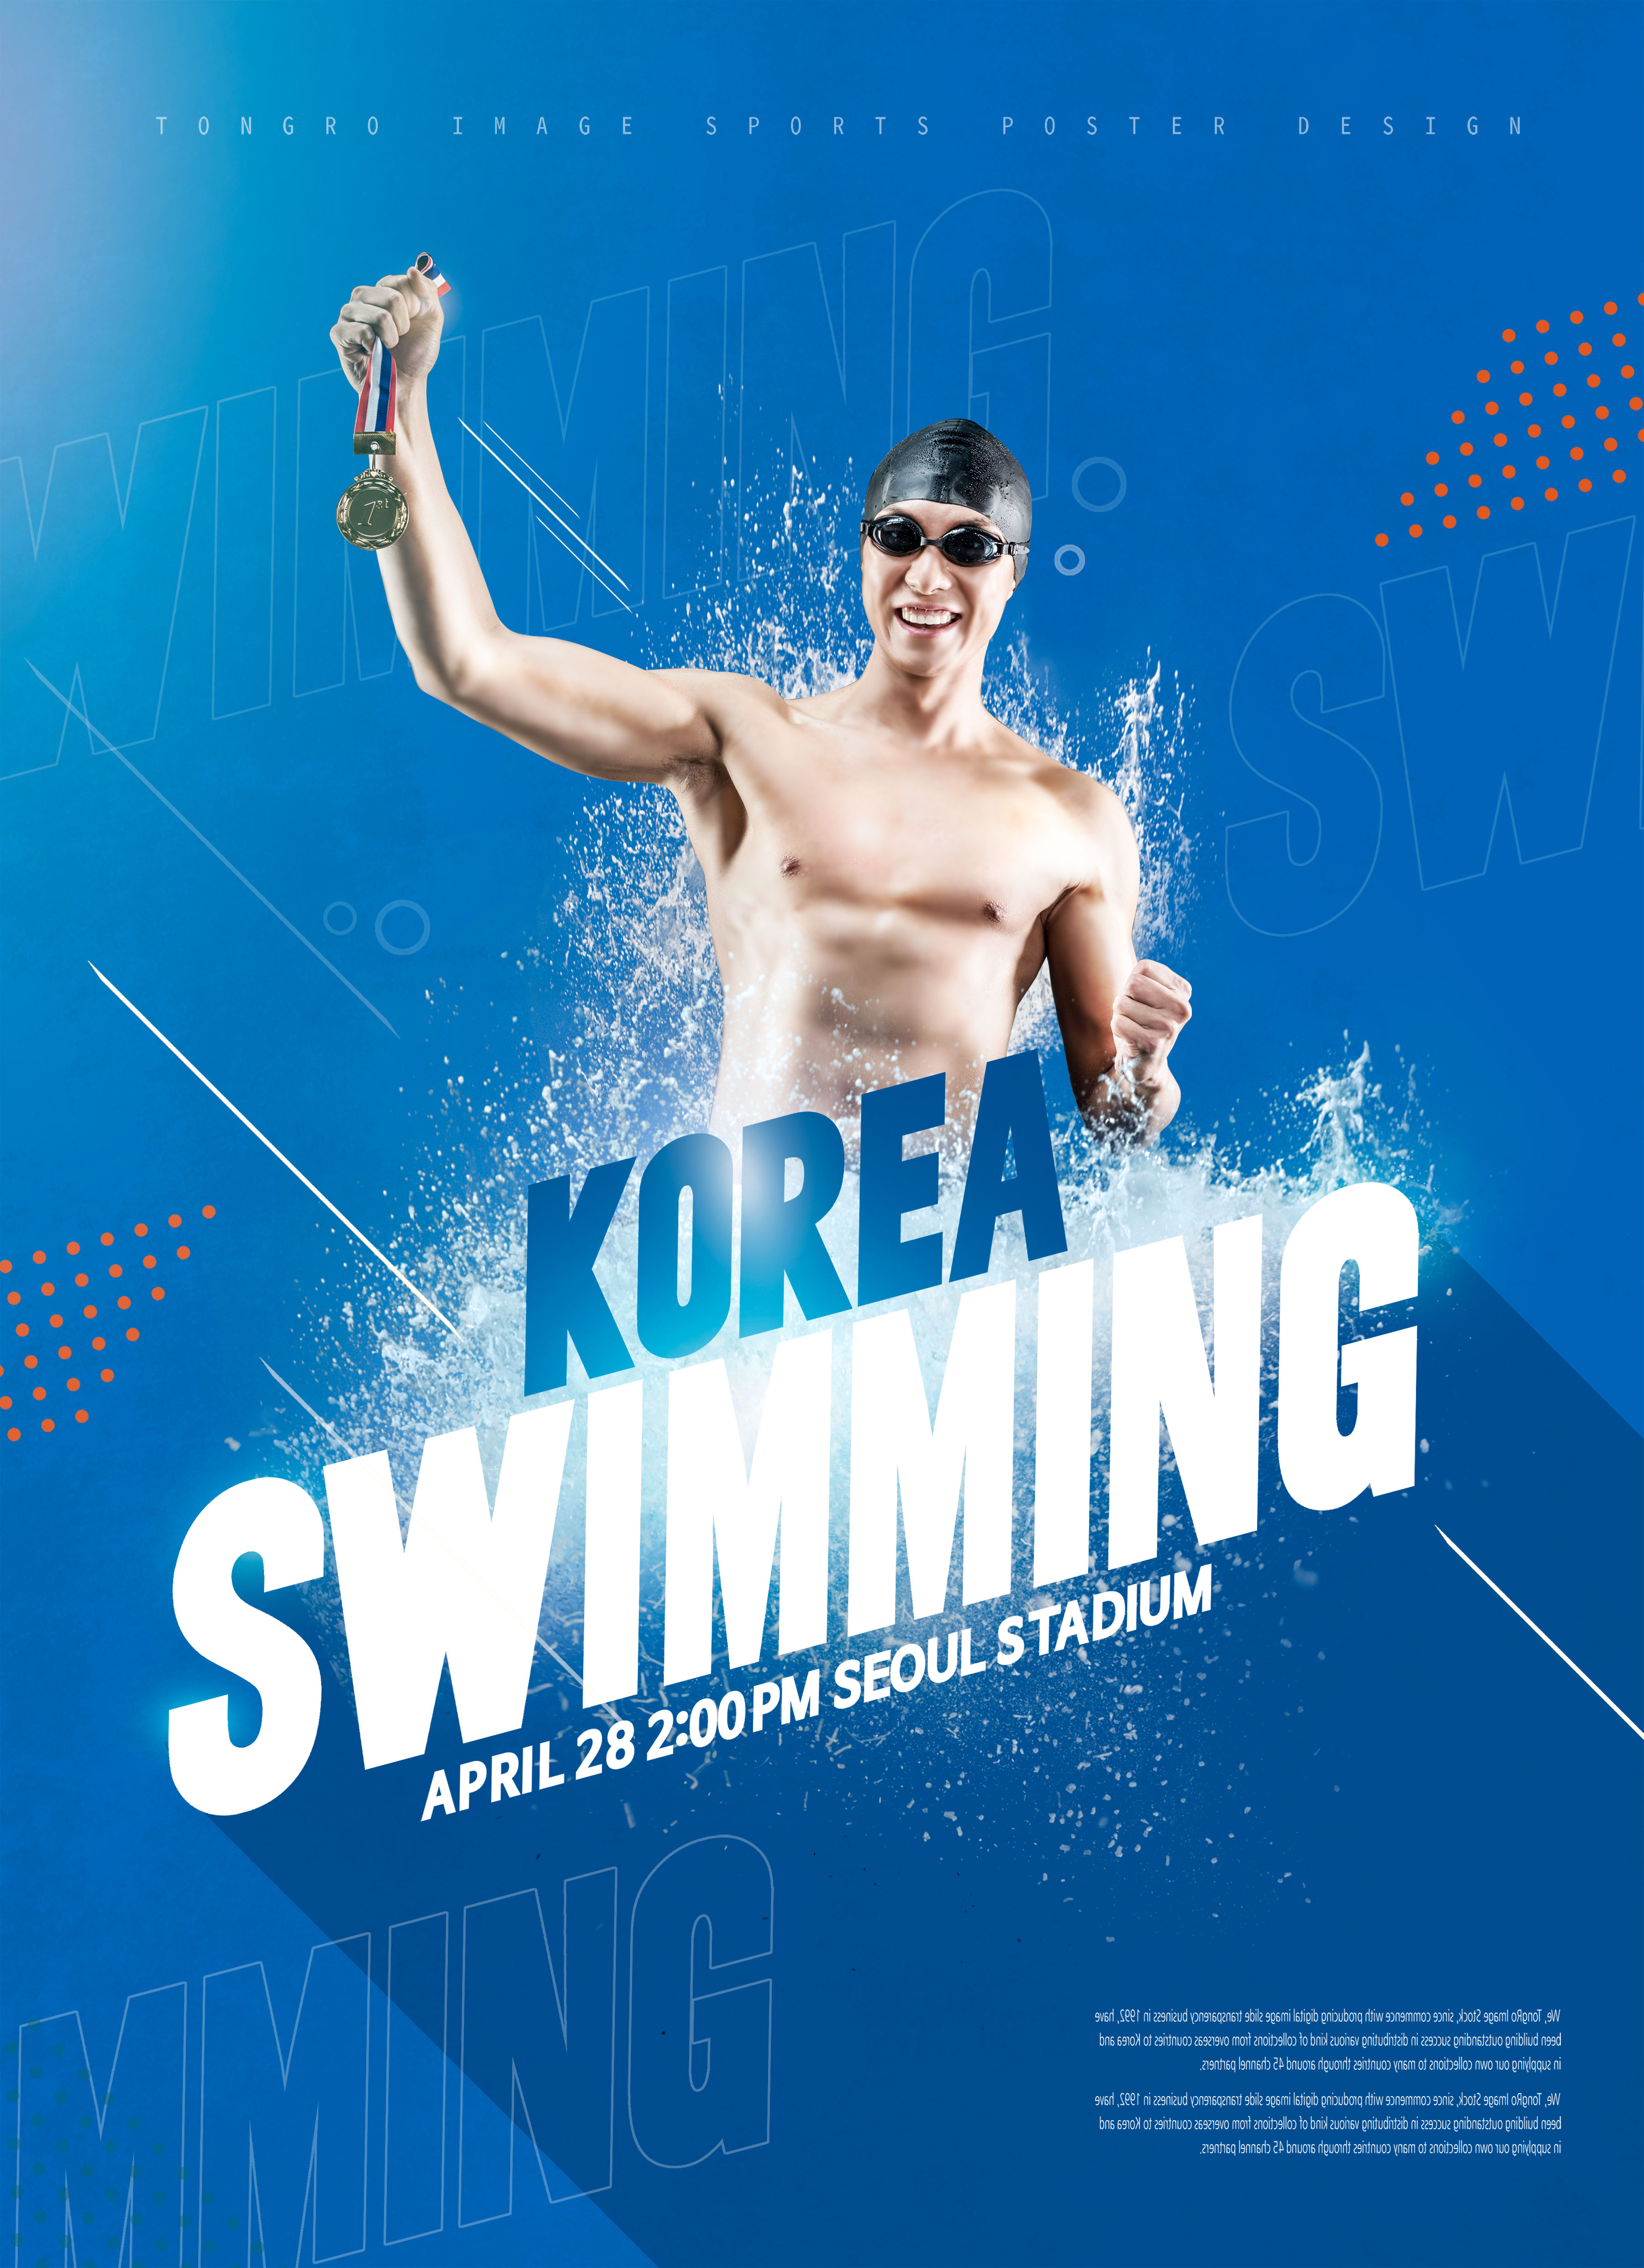 游泳体育运动比赛宣传海报PSD素材素材中国精选模板插图